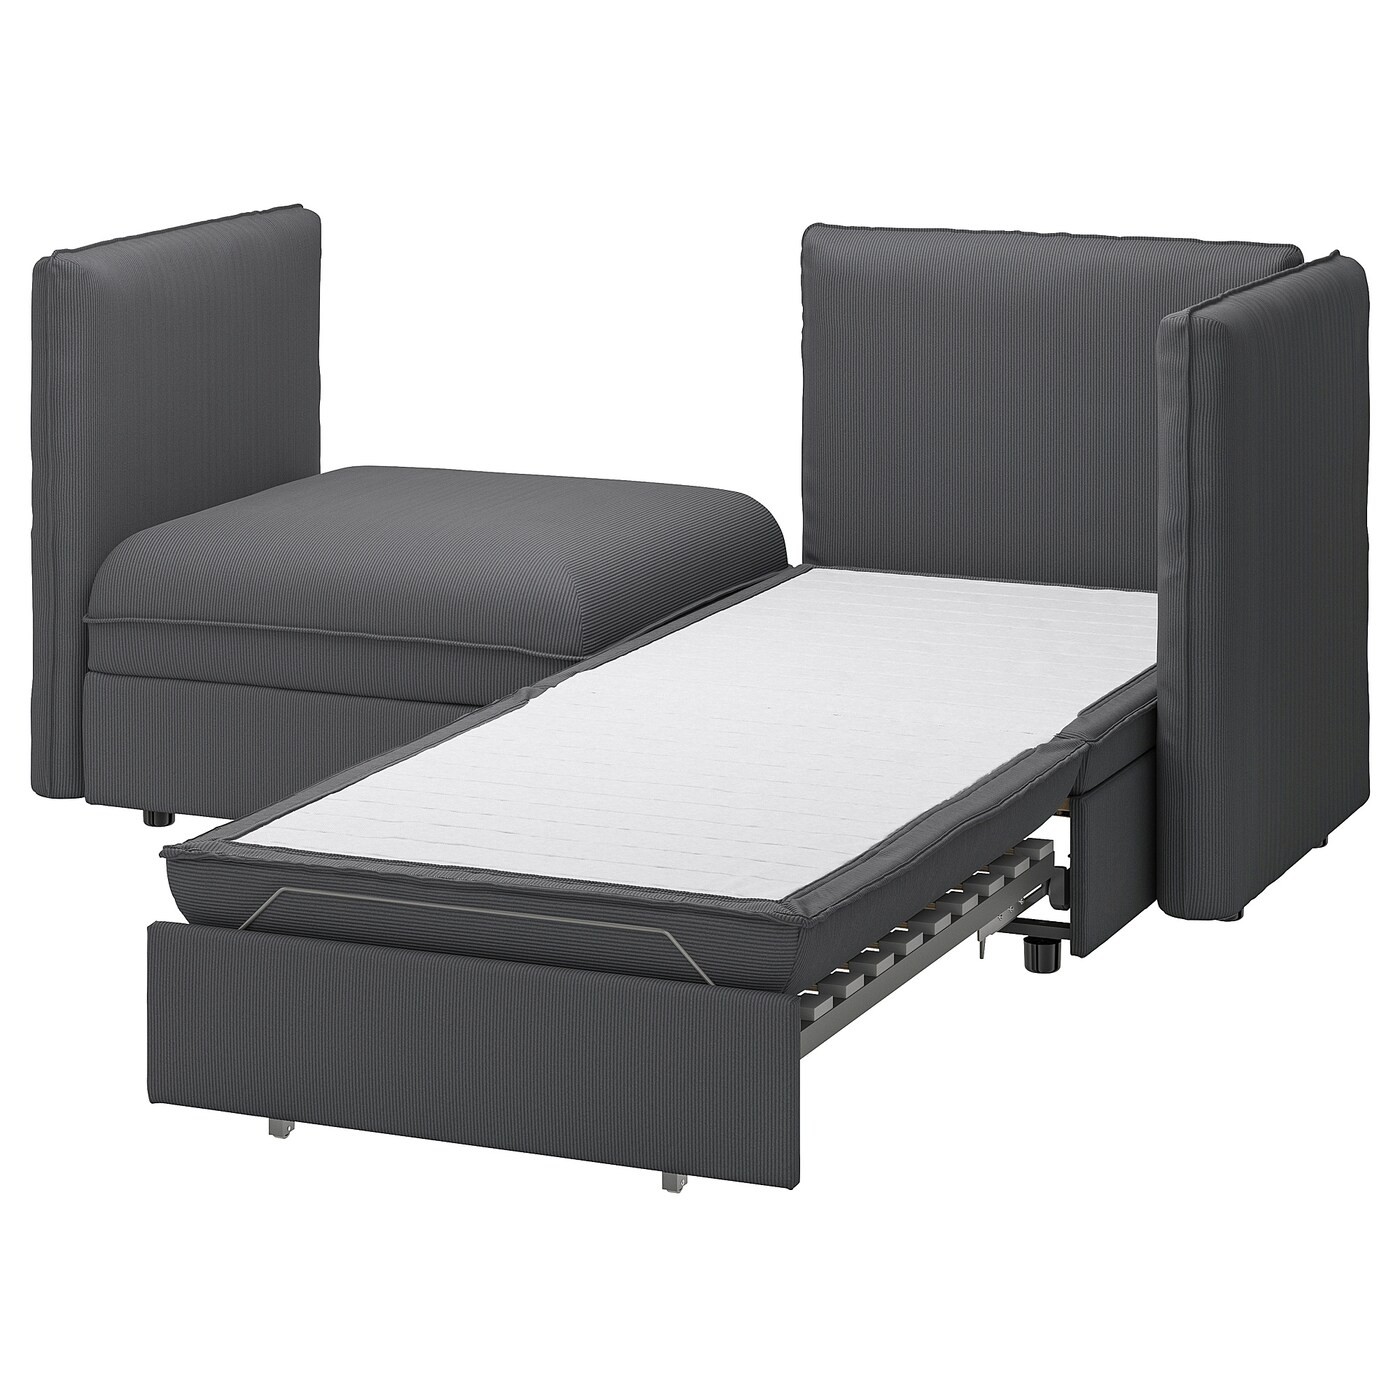 VALLENTUNA 2-seat modular sofa with sofa-bed